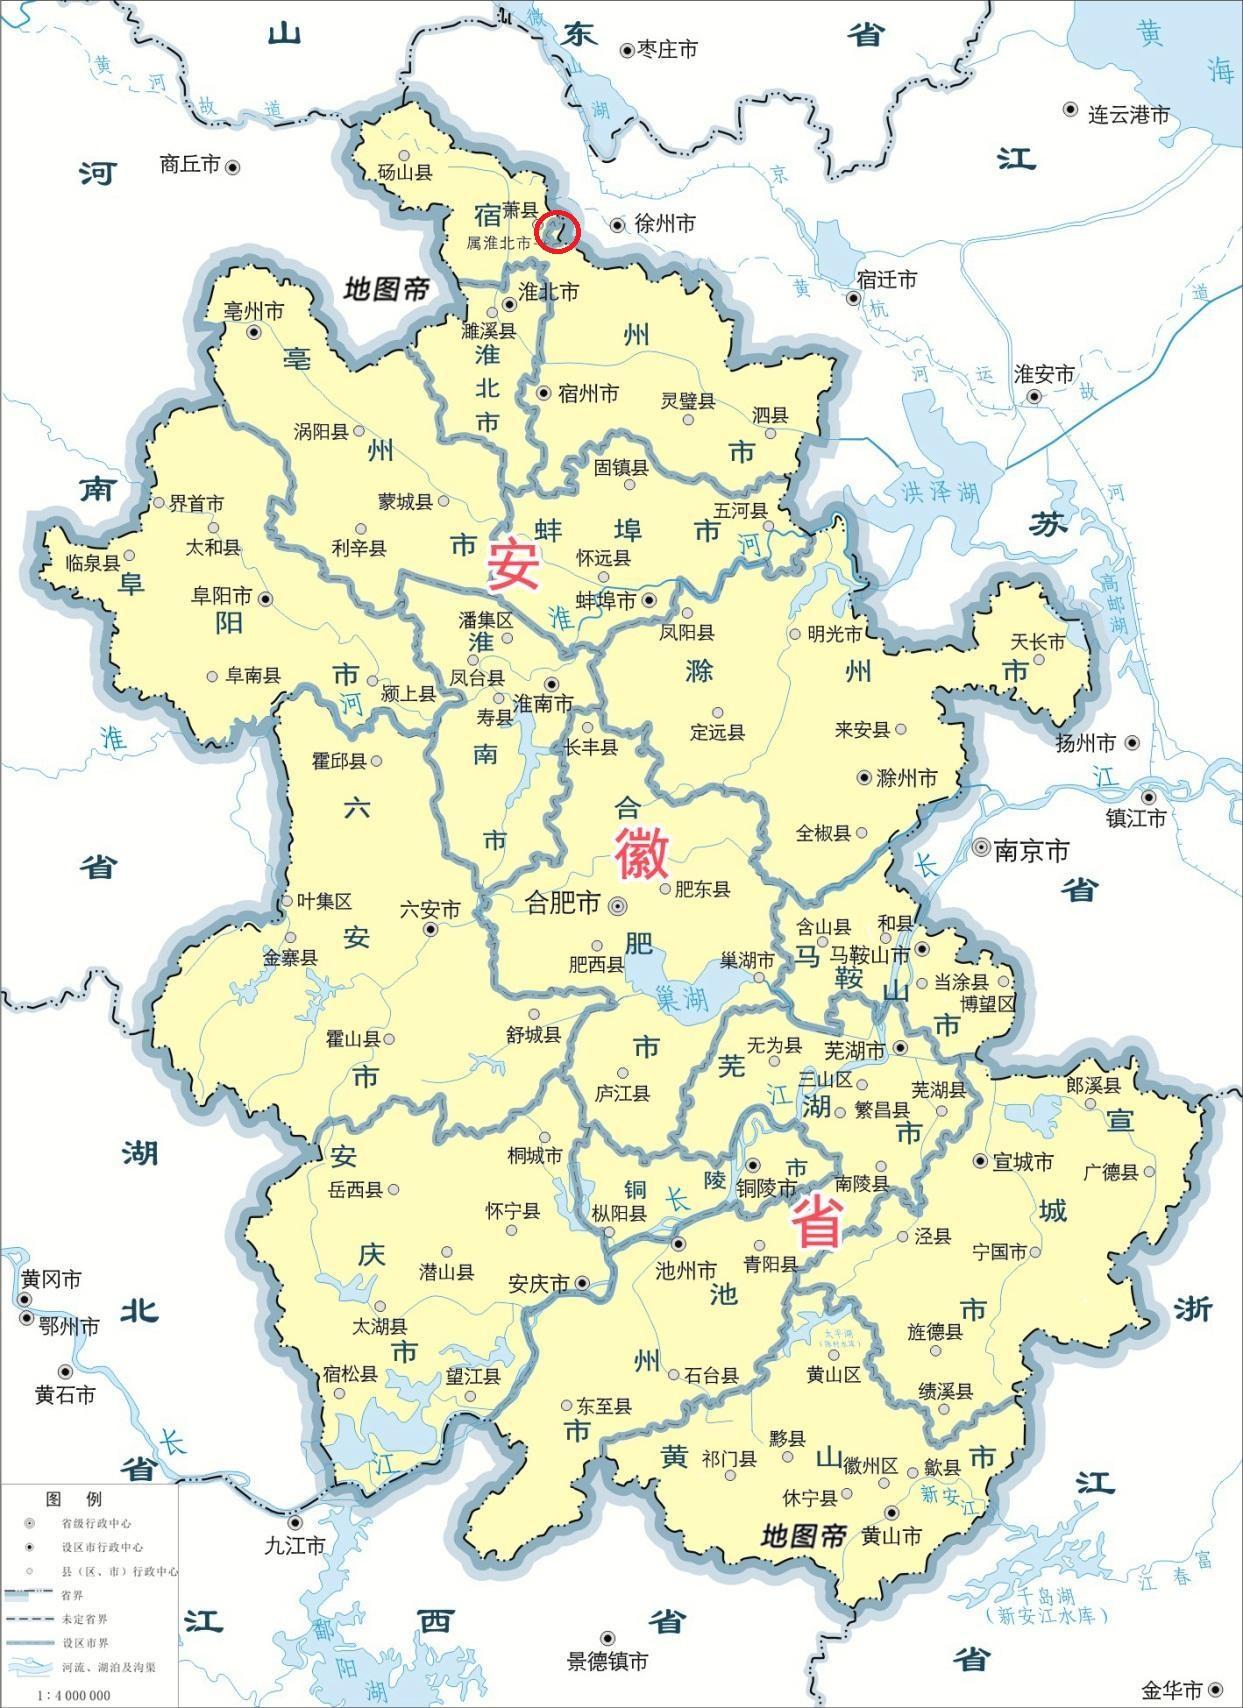 淮北市一个镇竟然飞到30公里外隔着萧县和徐州接壤